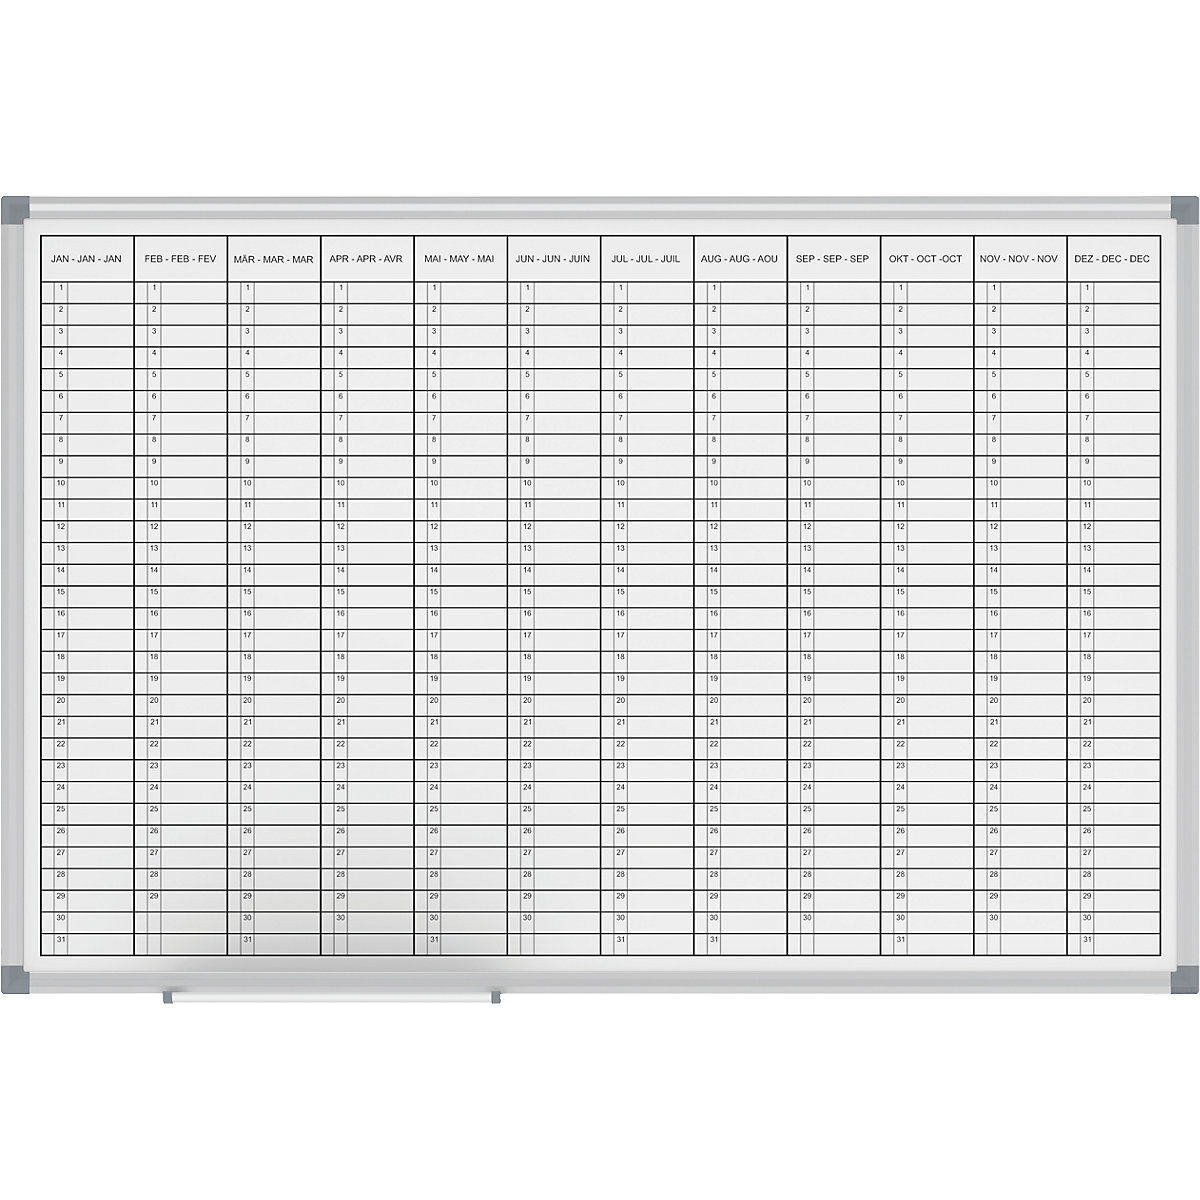 Planbord – MAUL, jaarplanner, weergave 12 maanden, breedte 900 mm